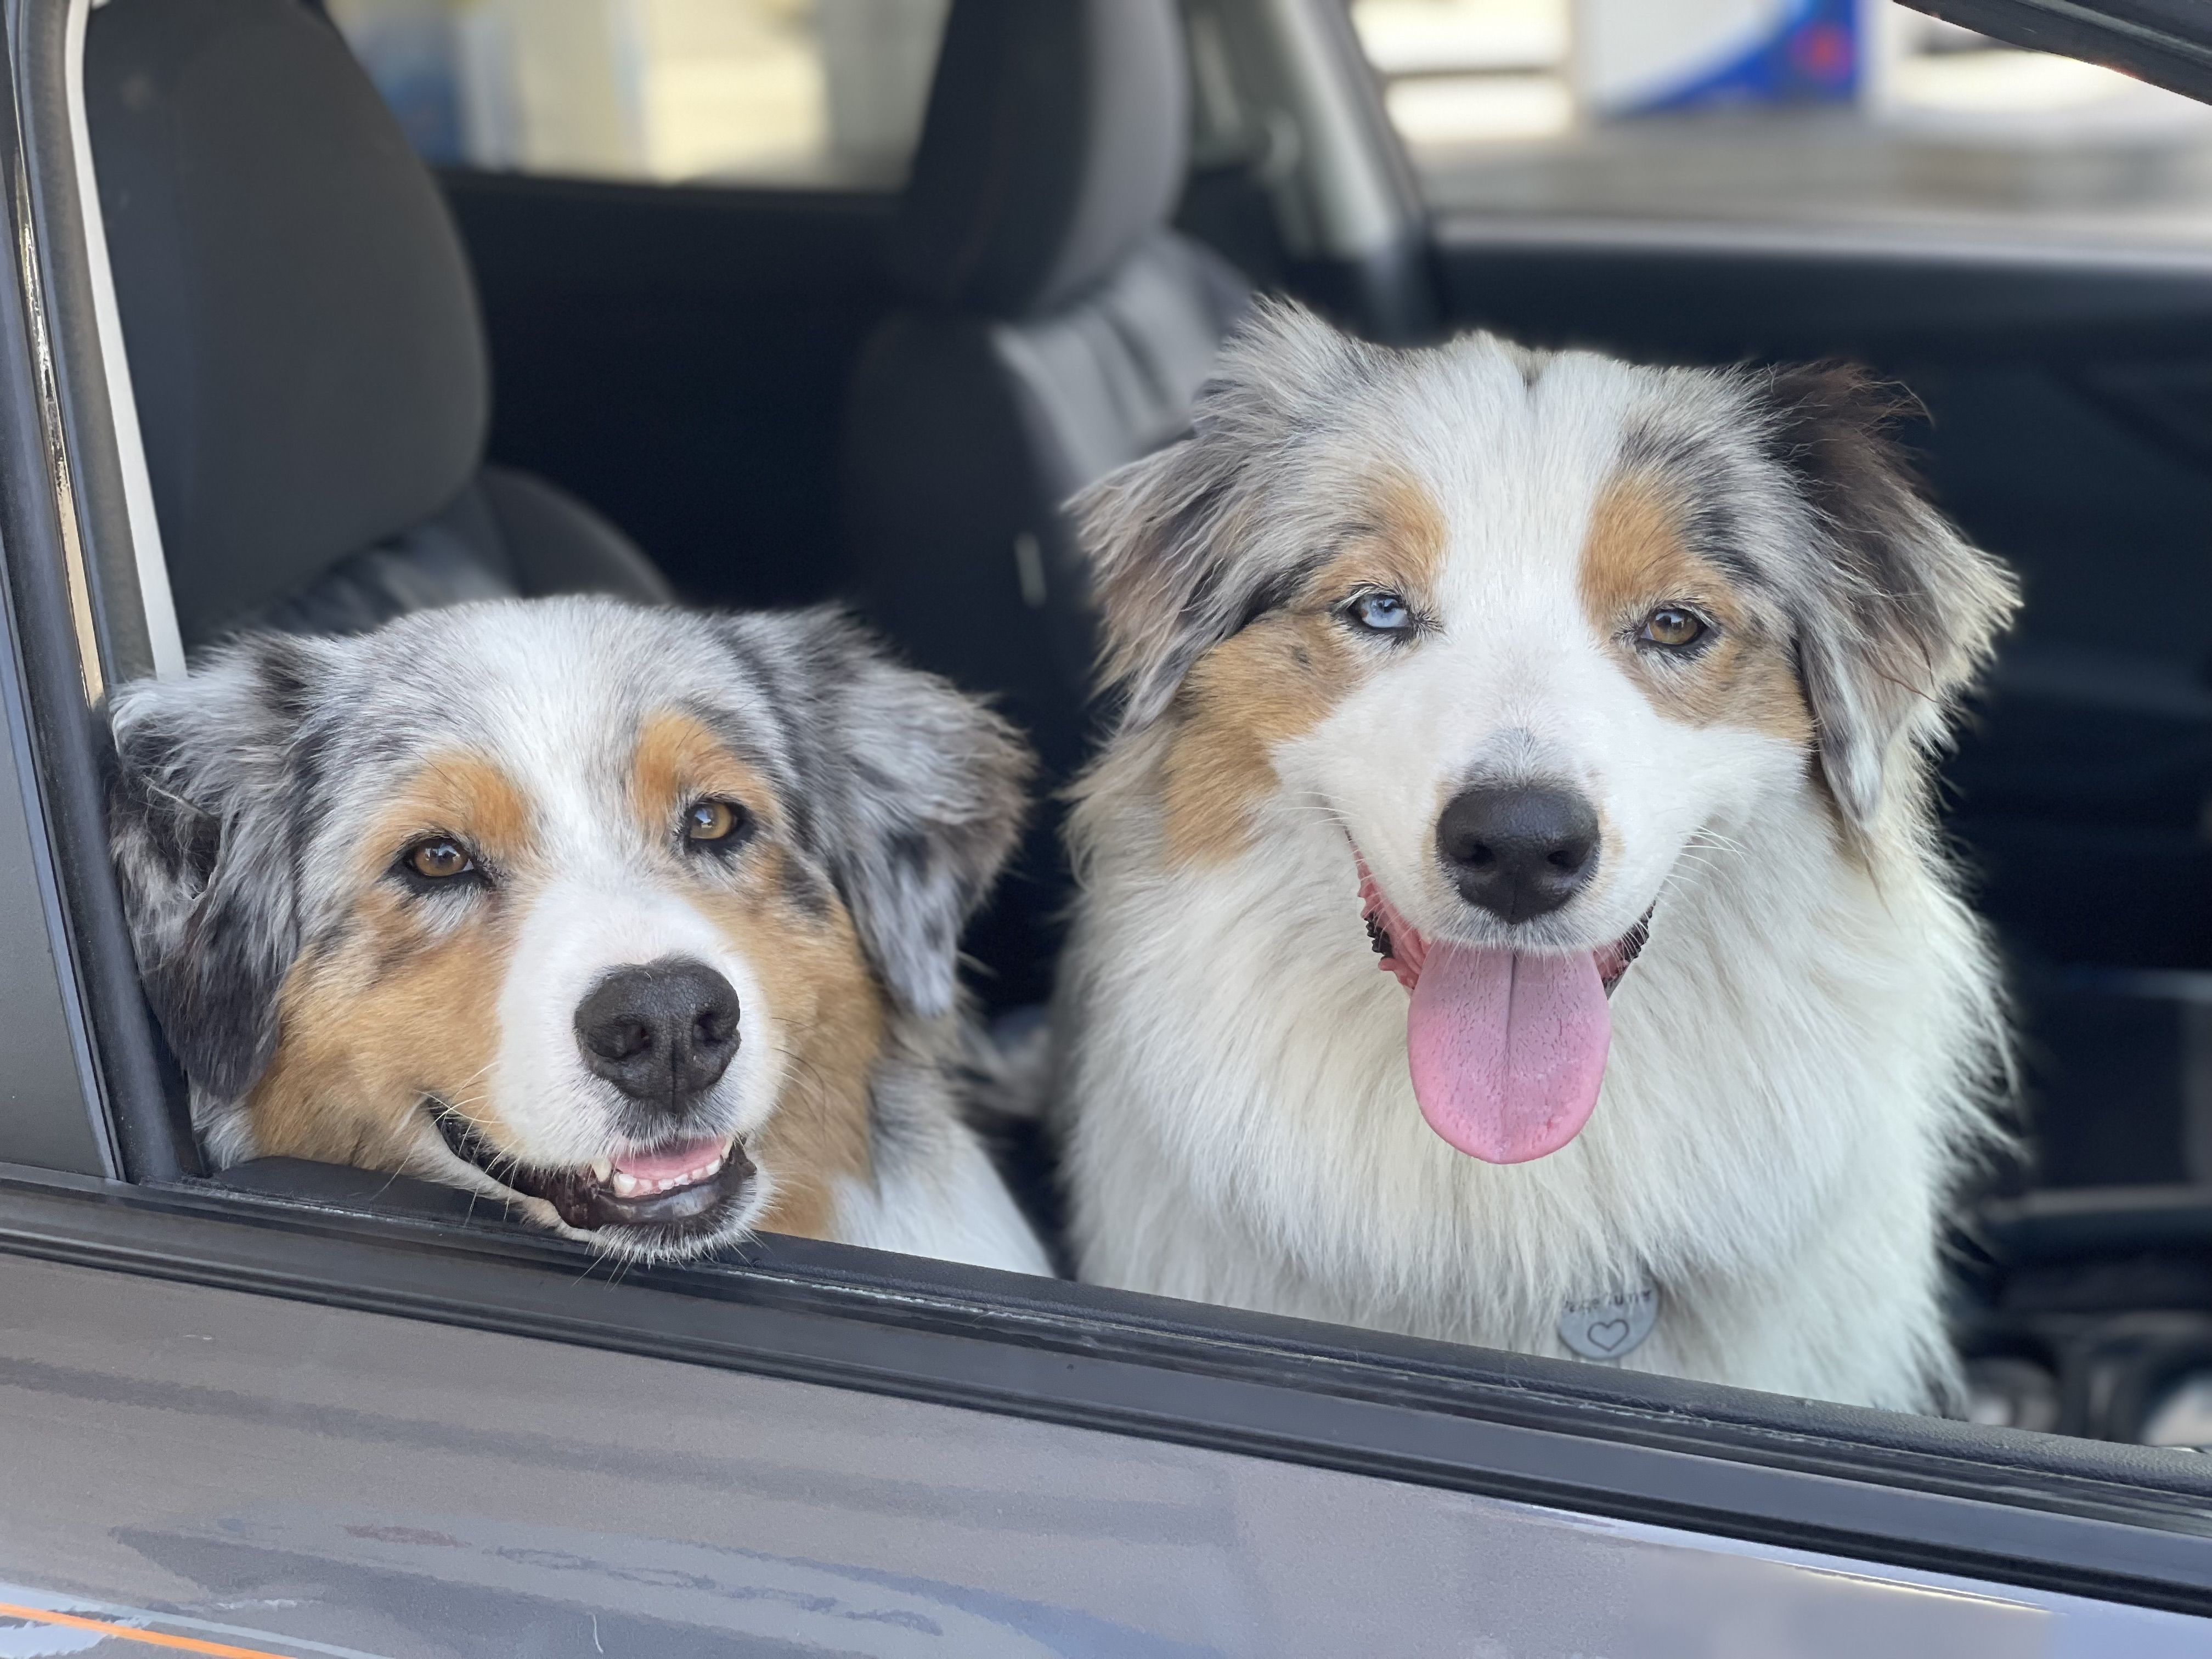 Two Australian Shepherd dogs smiling in a car window